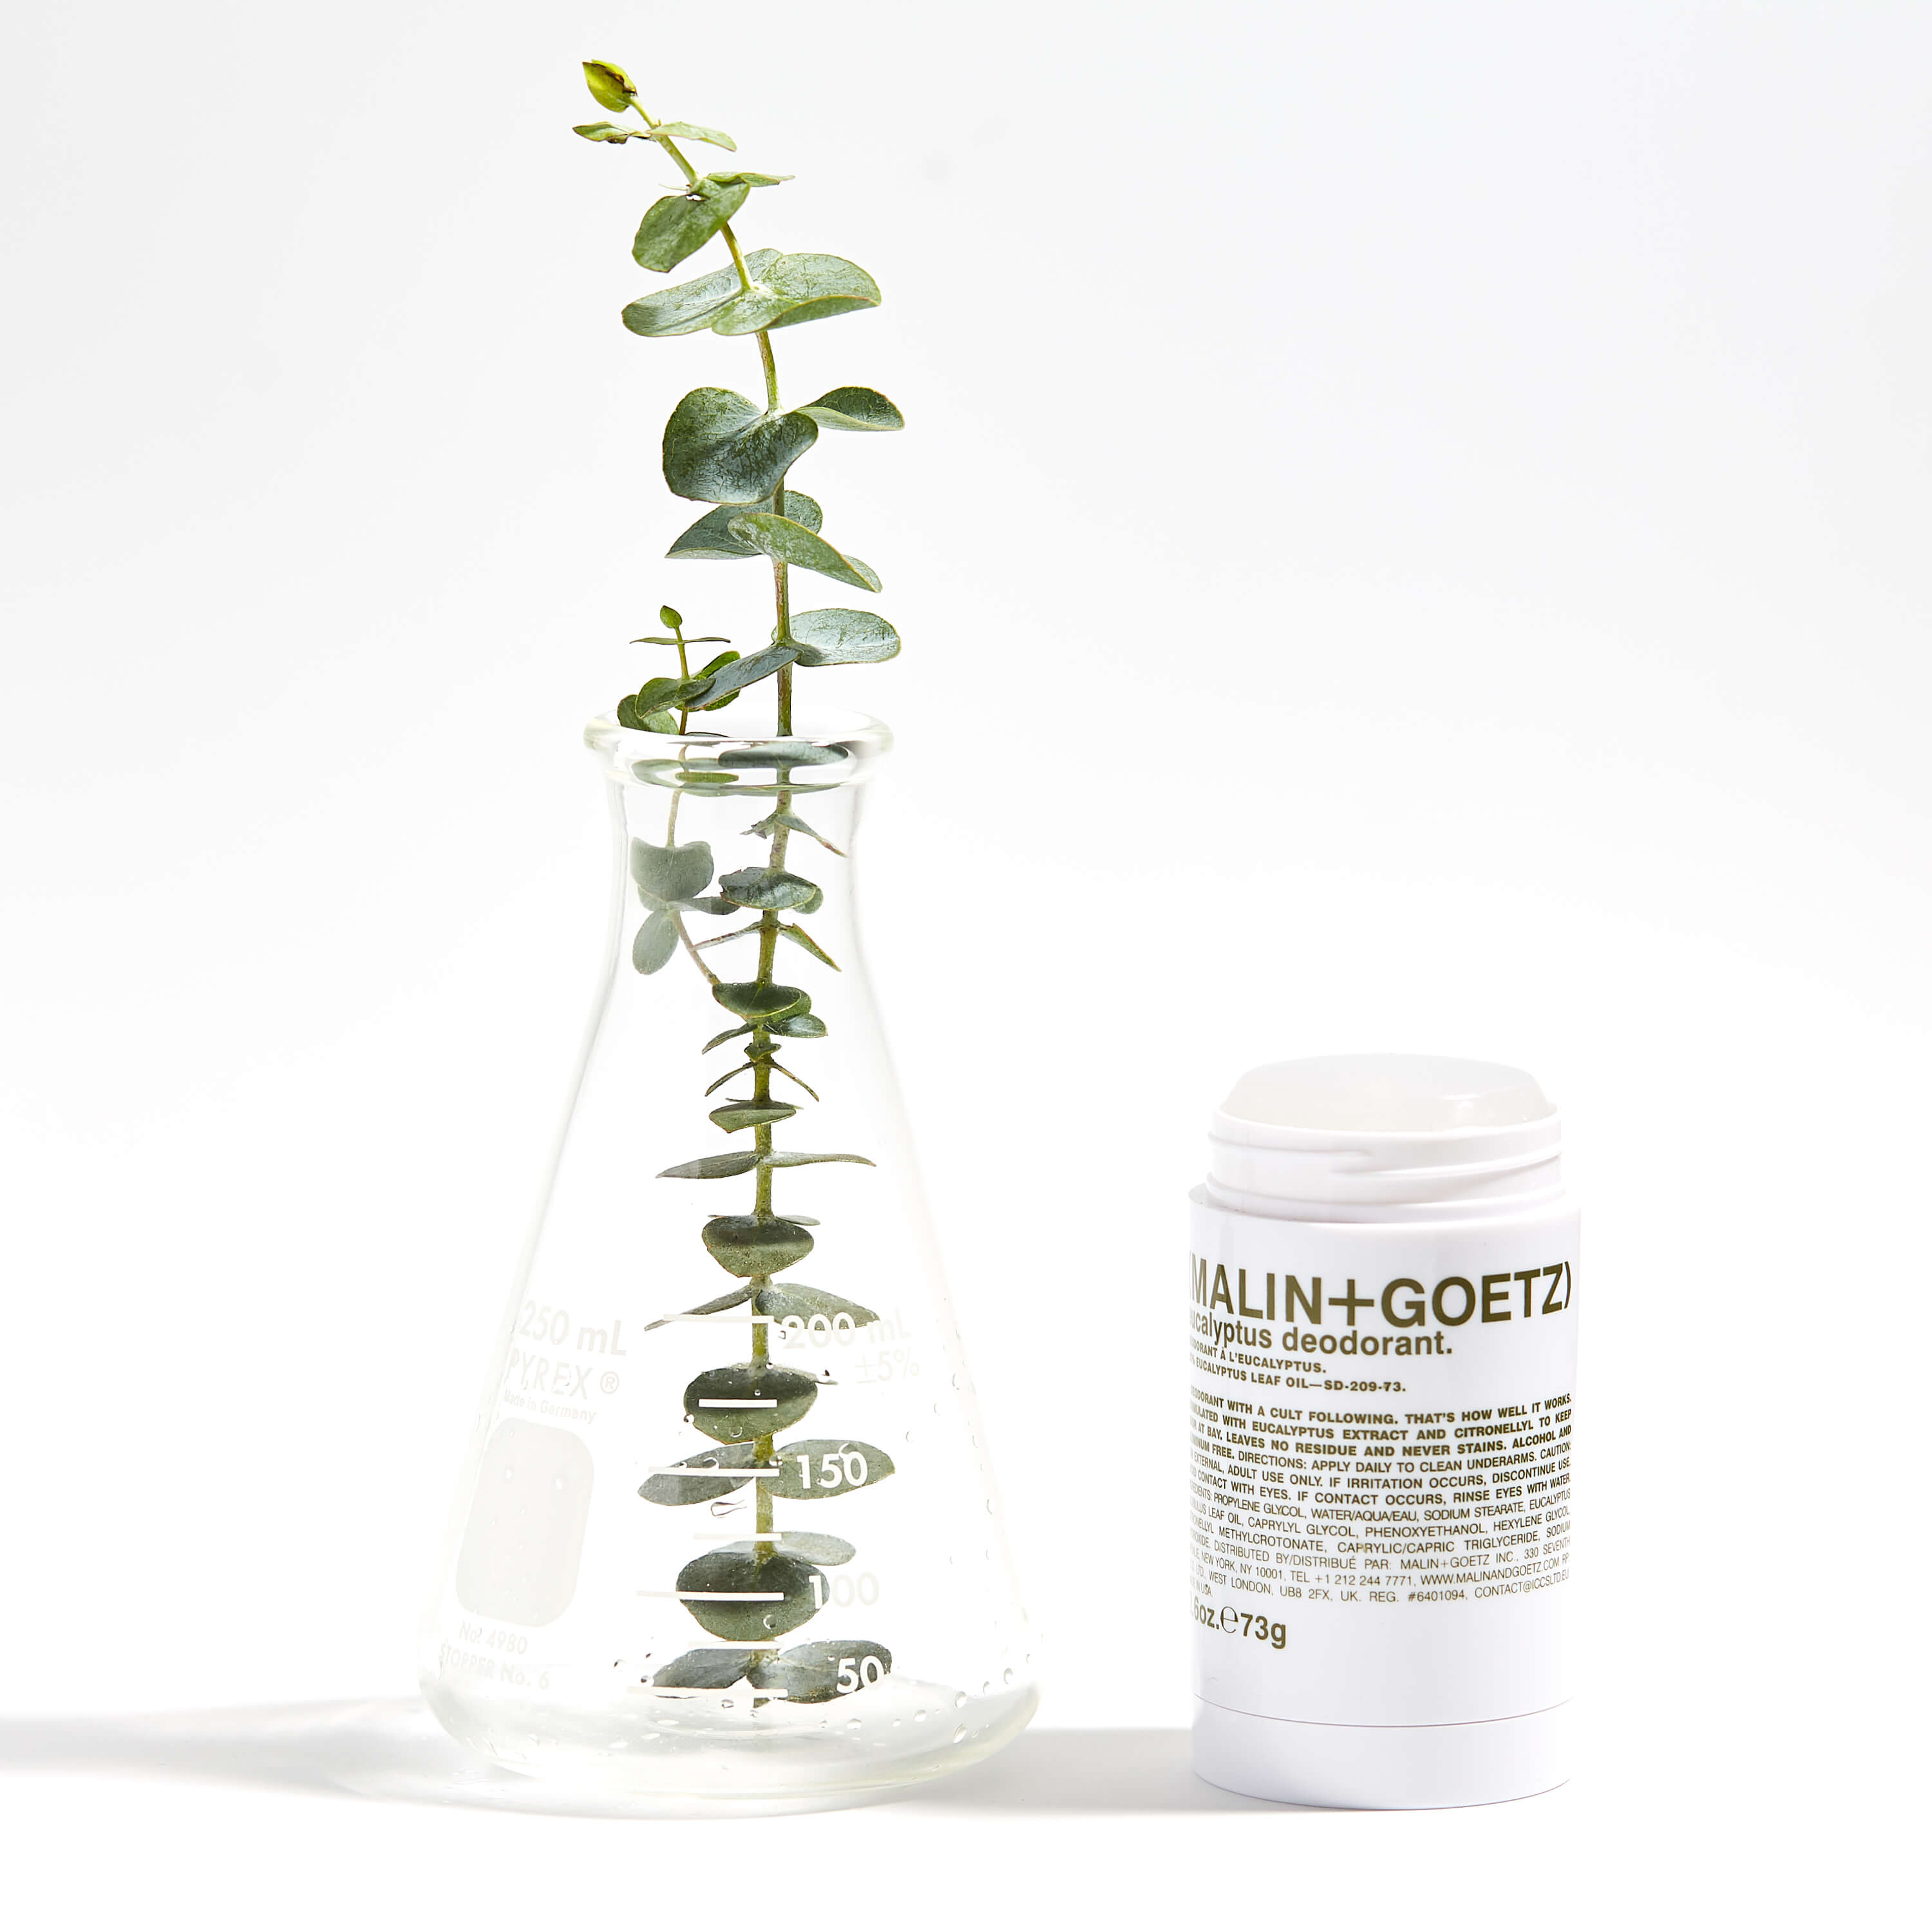 Eucalyptus Deodorant | Stick | by Malin+Goetz - Lifestory